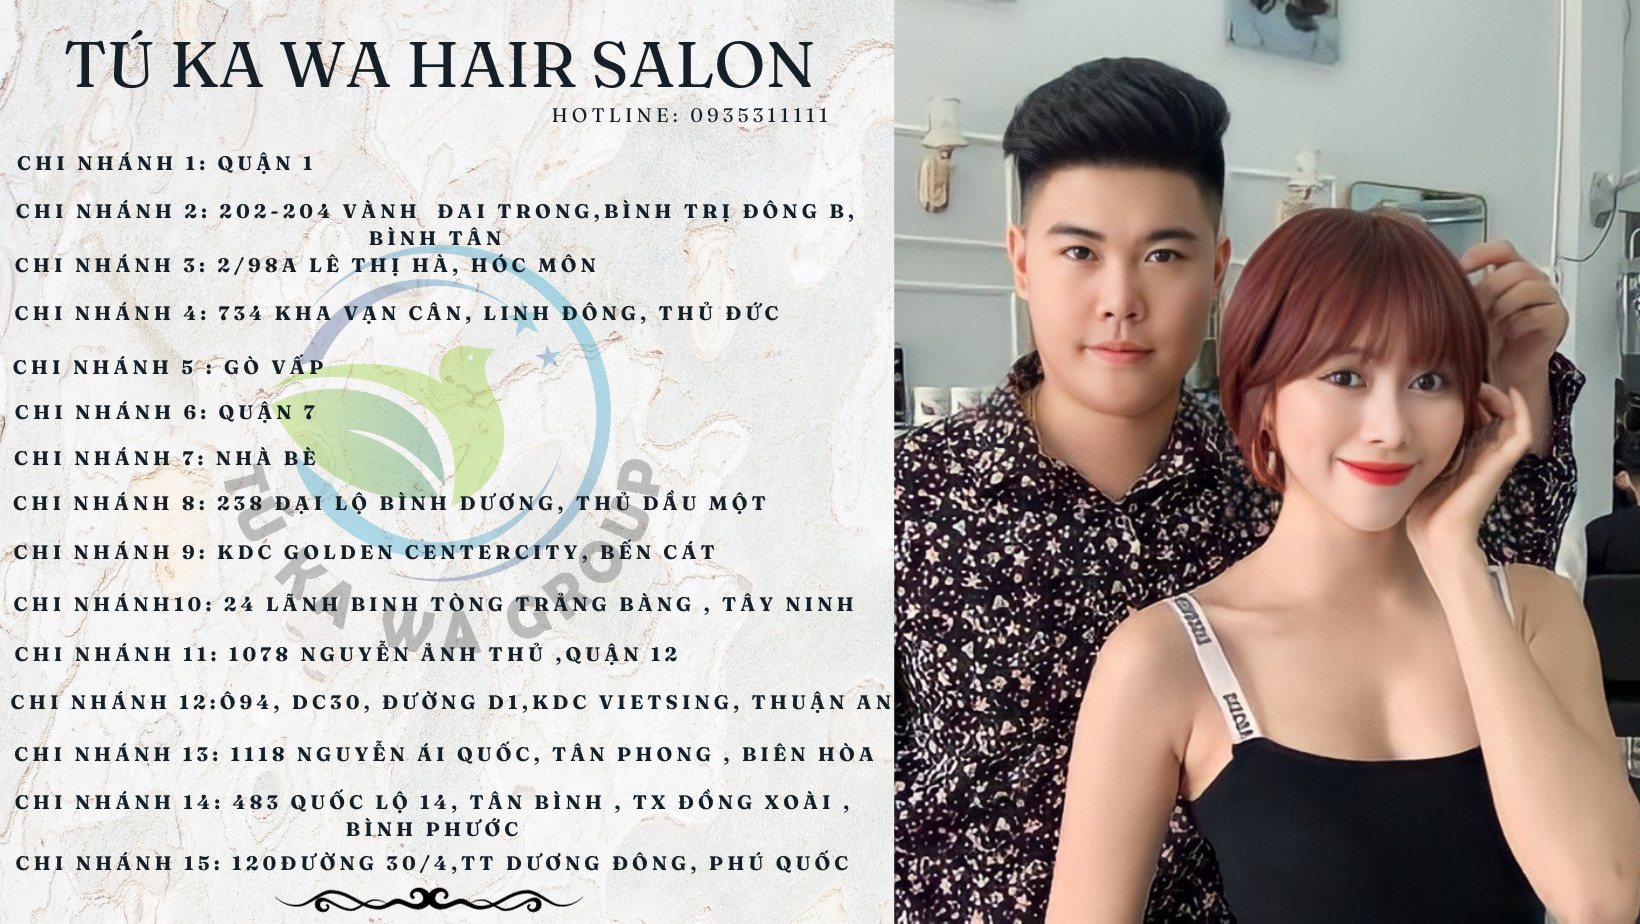 Binh Duong hair salon - tú kawa